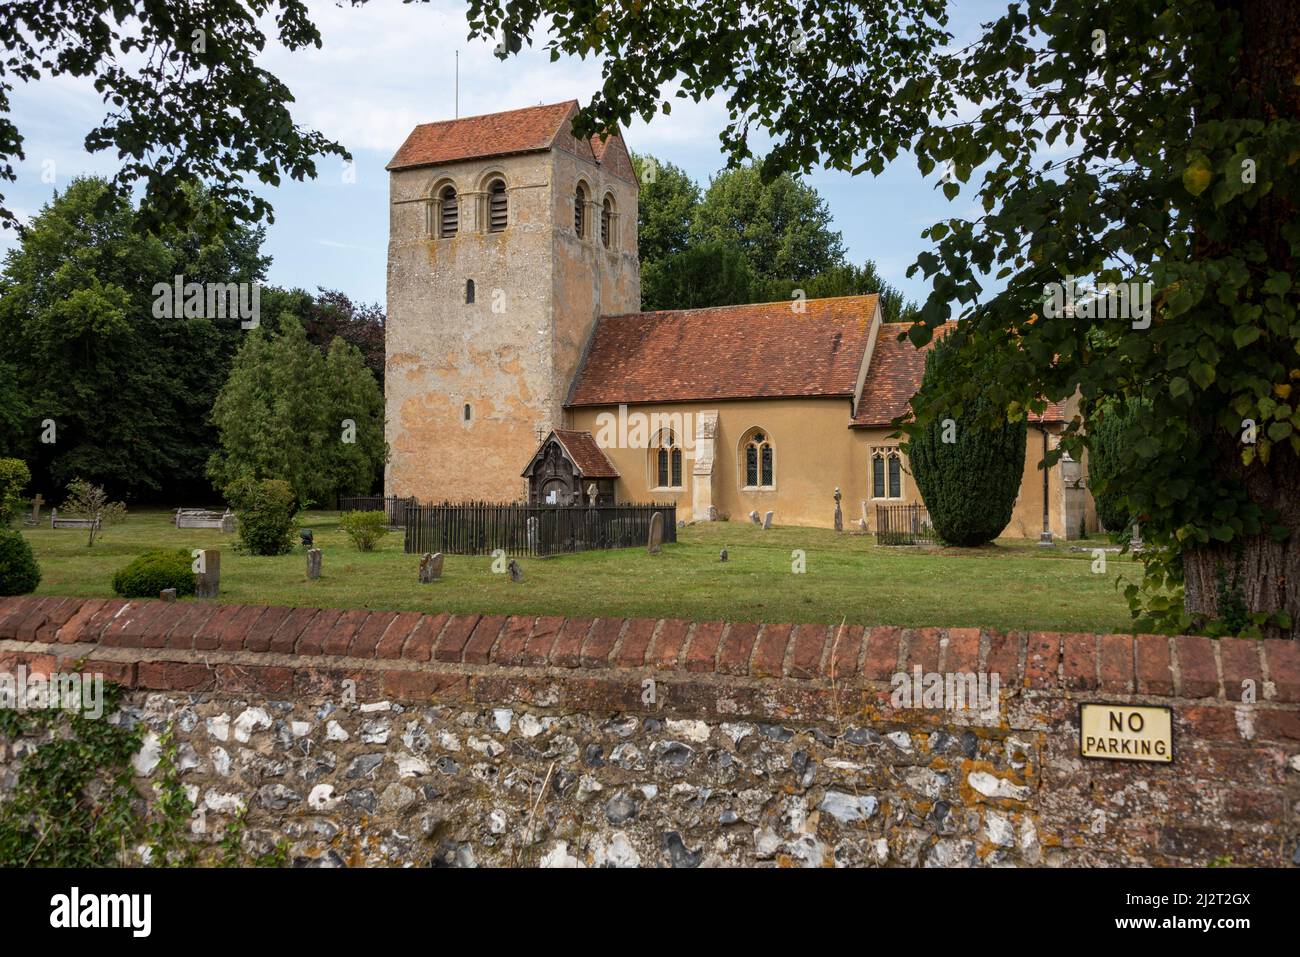 The Church of St Bartholomew, Fingest, Buckinghamshire, UK Stock Photo